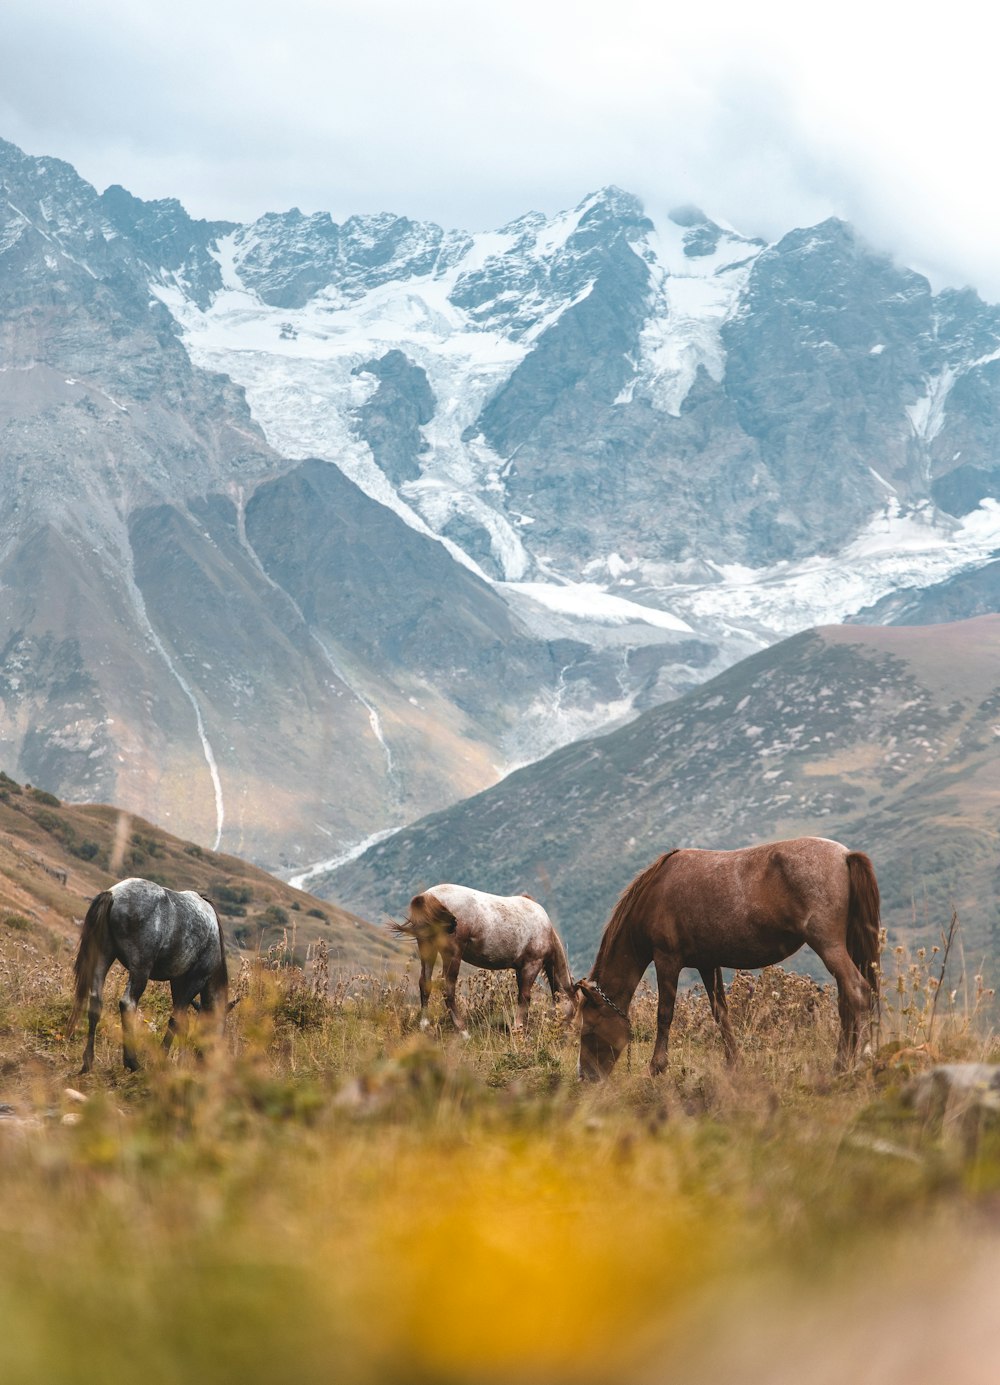 três cavalos comendo grama perto da montanha coberta de neve